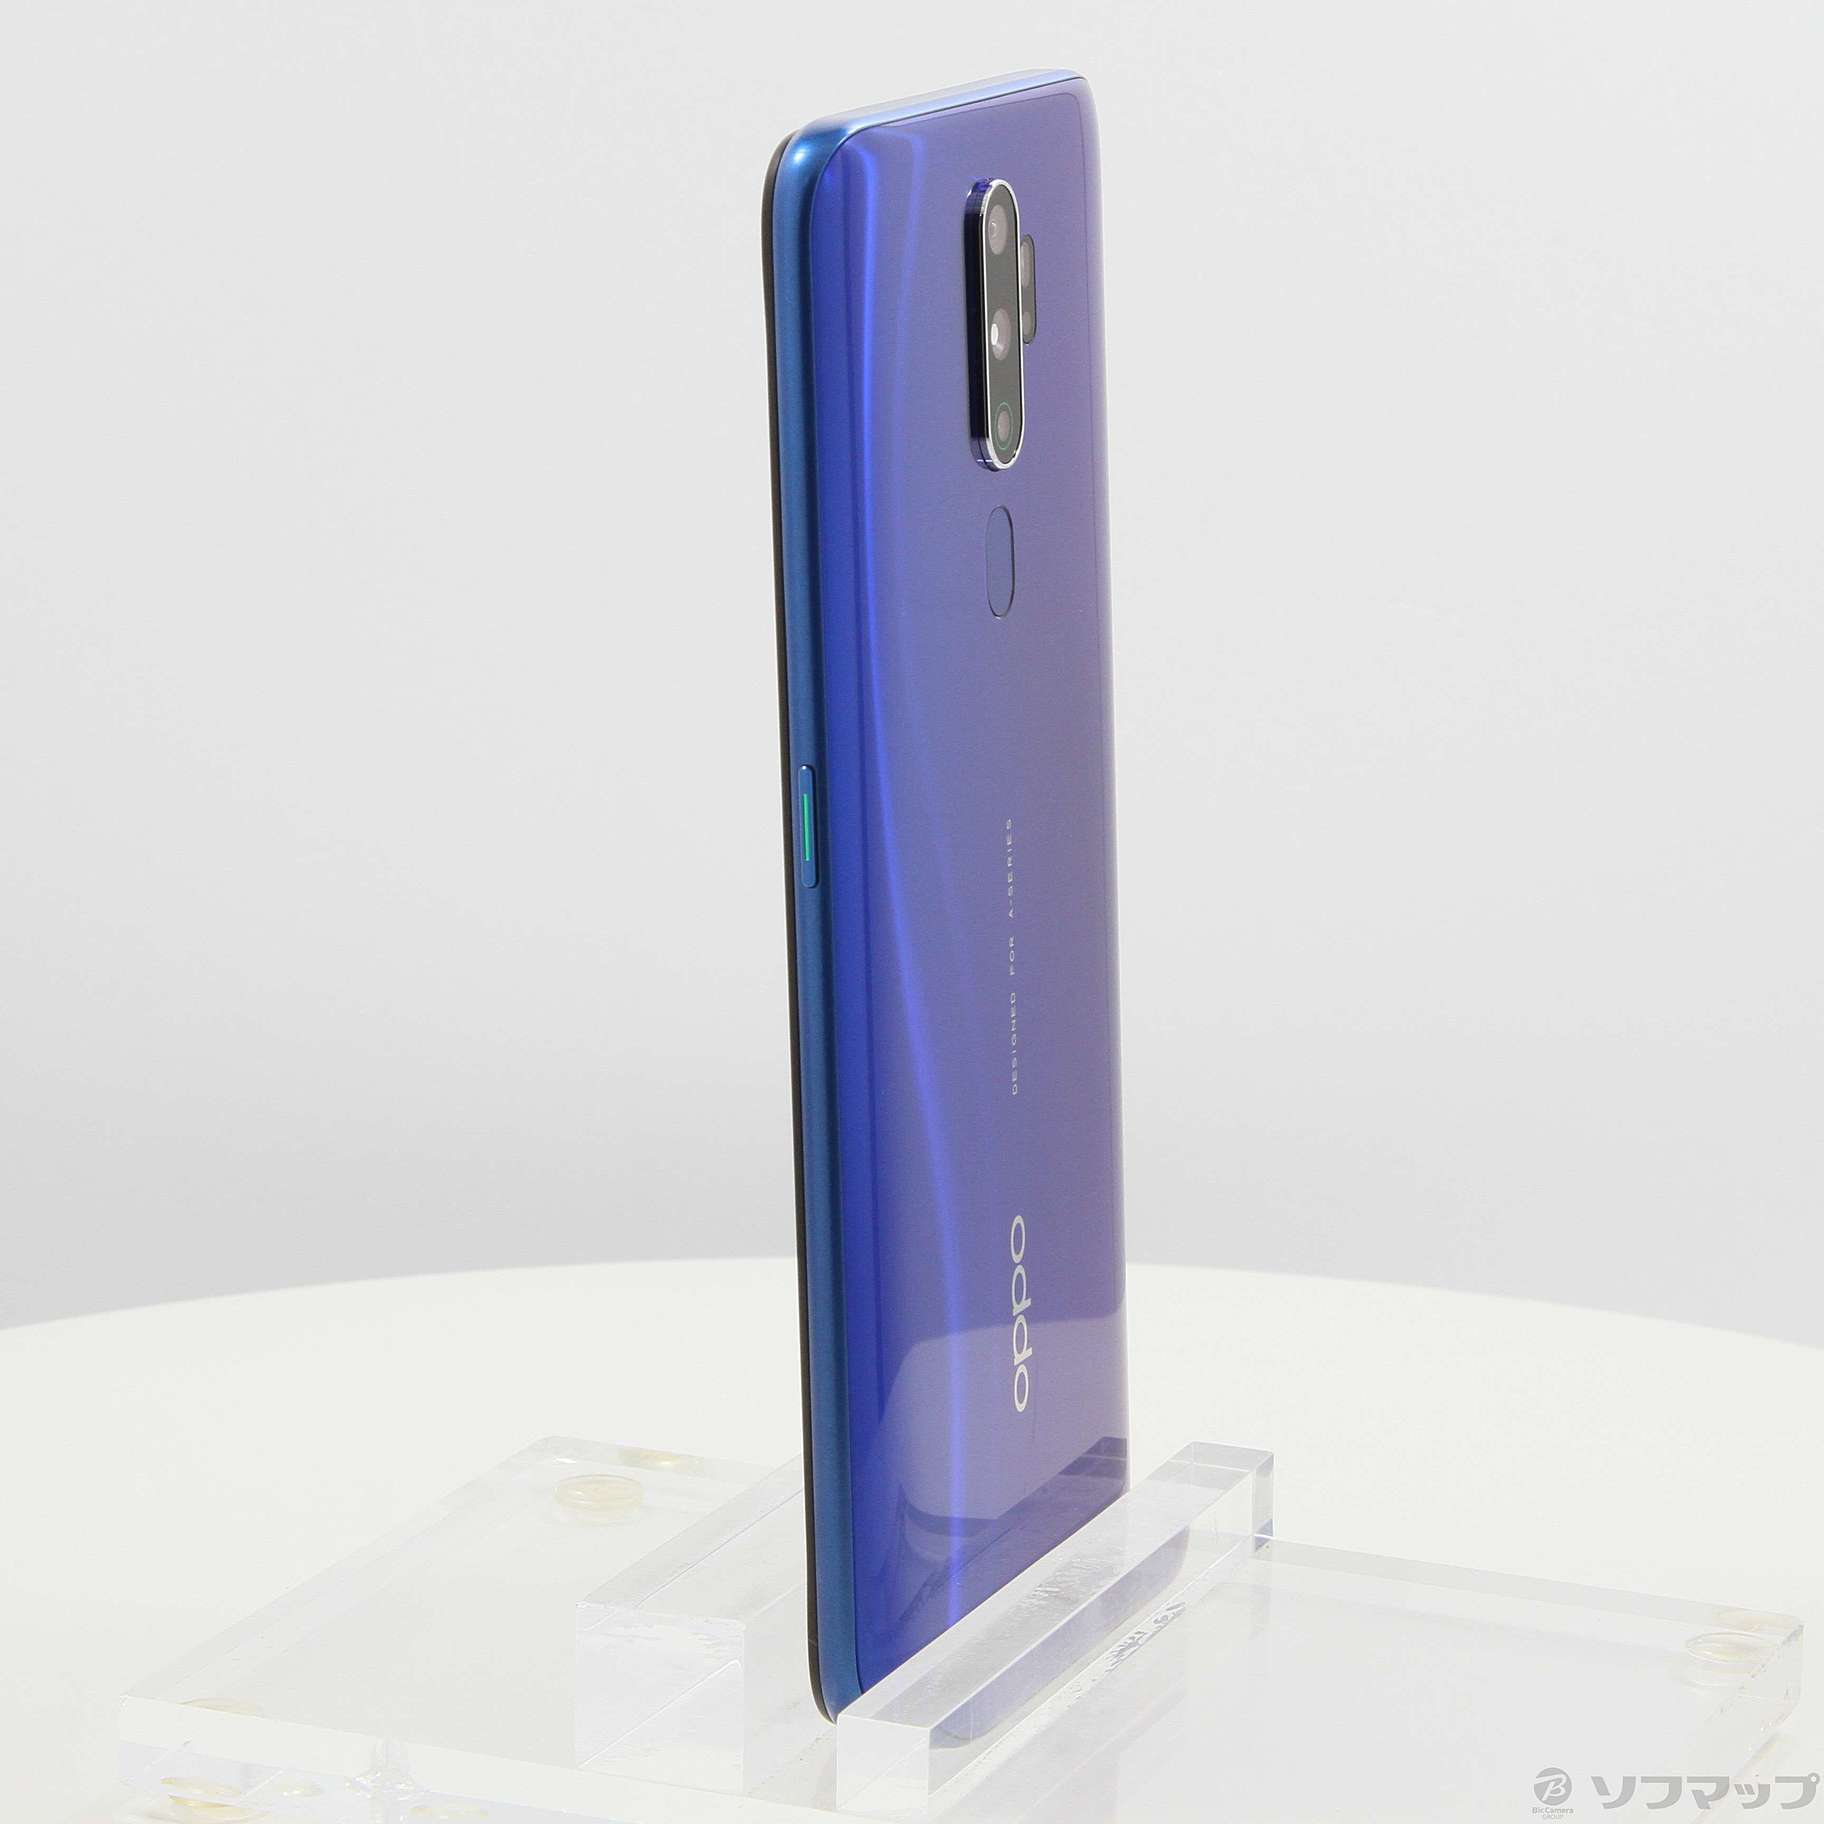 【新品・未開封】OPPO A5 2020 ブルー 64GB SIMフリー